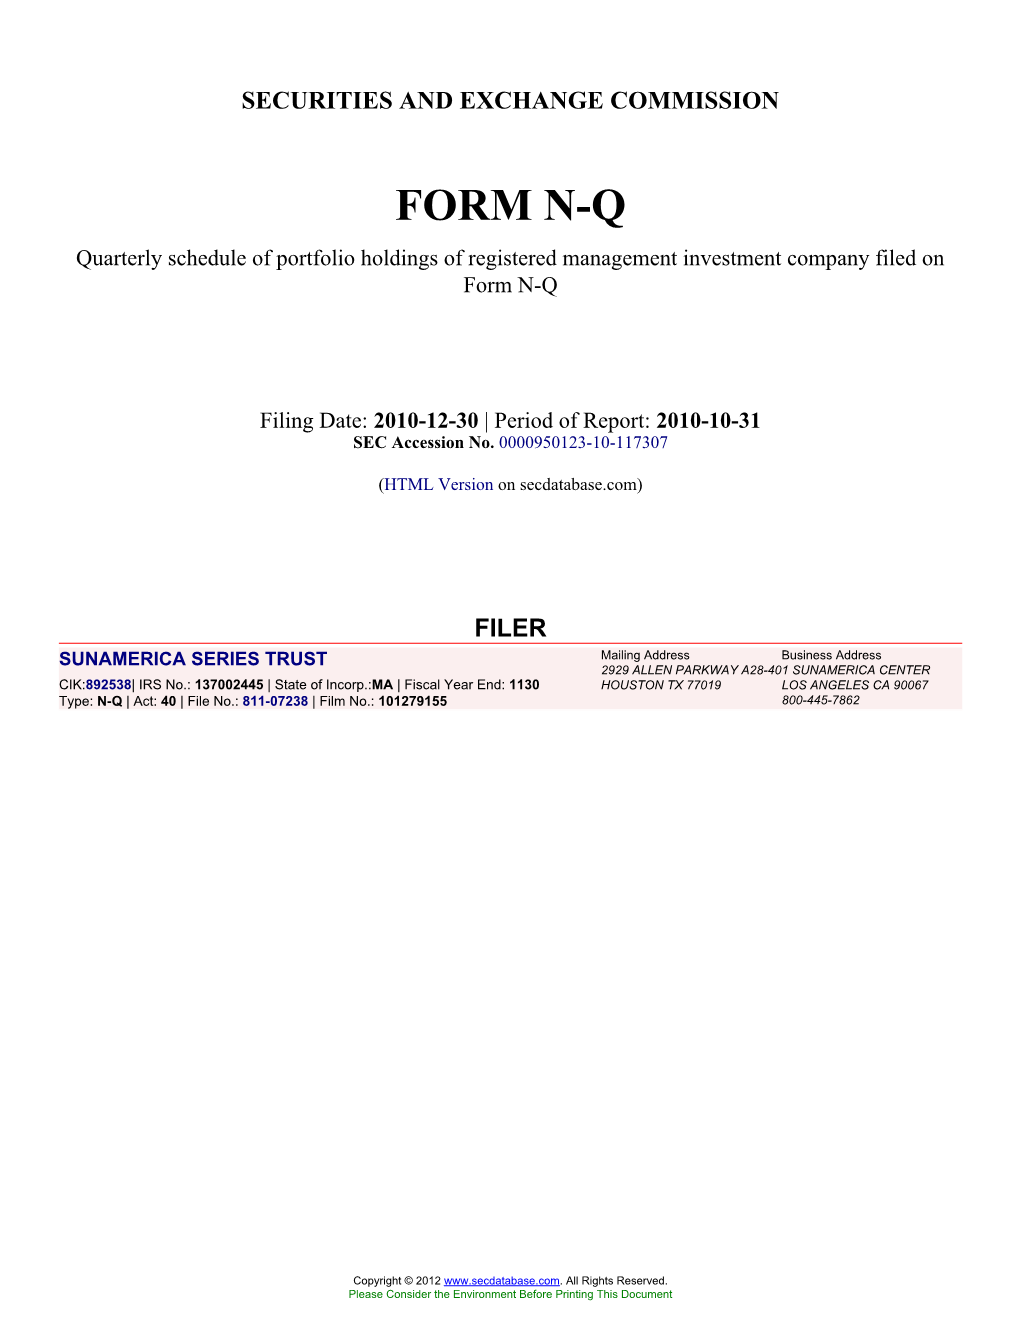 Form: NQ, Filing Date: 12/30/2010